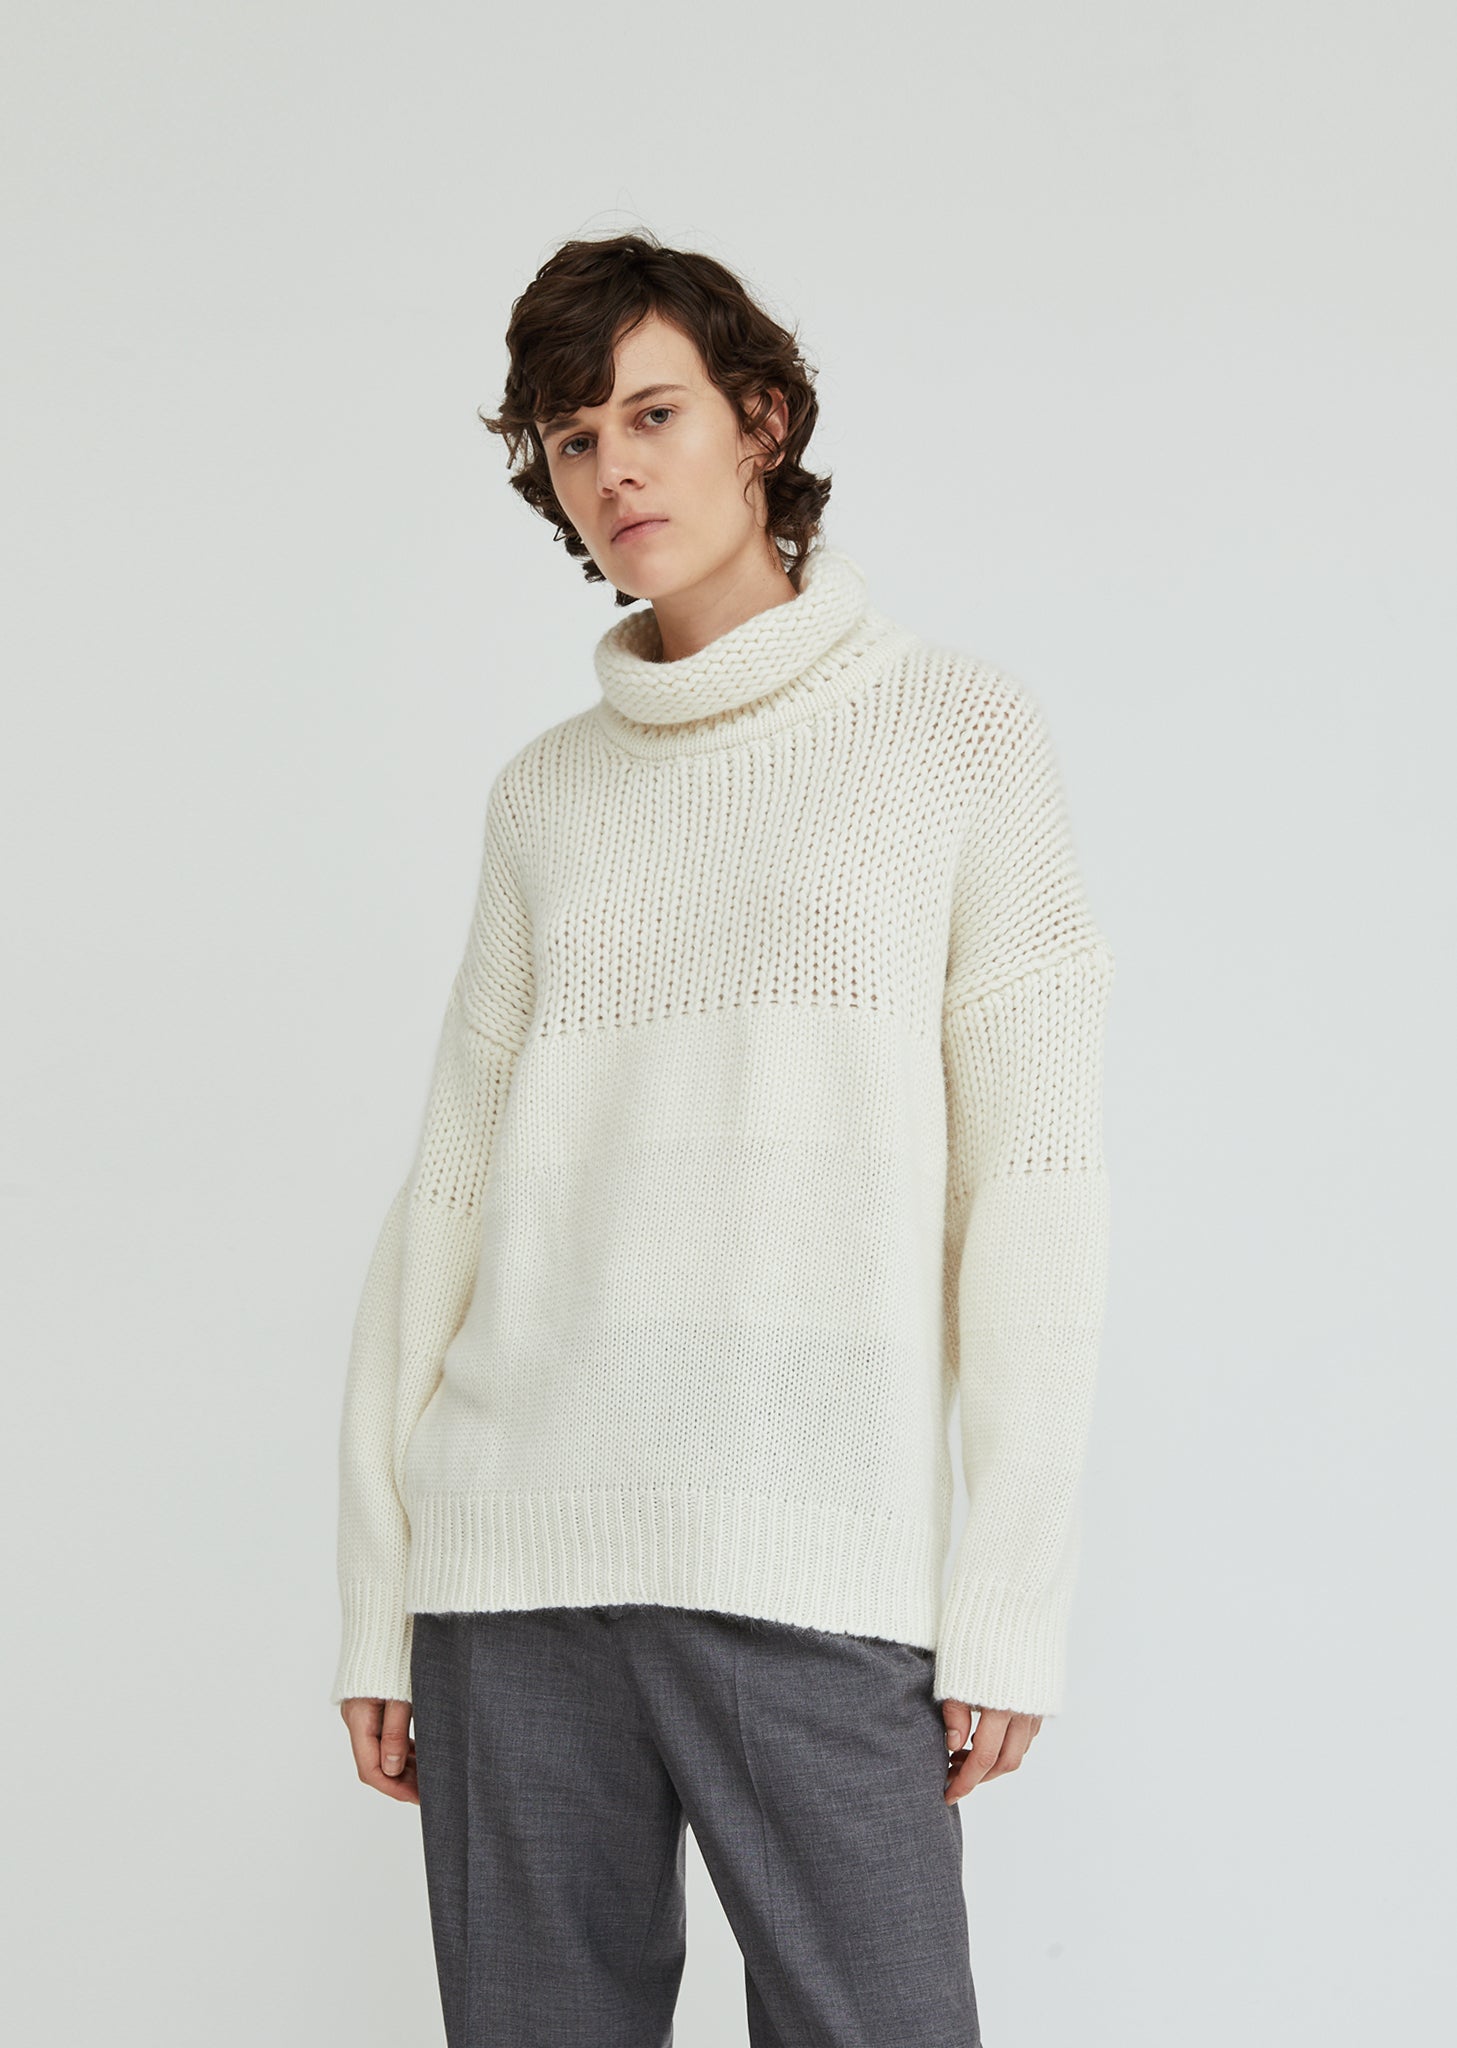 Turtleneck Sweater by Jil Sander- La Garçonne